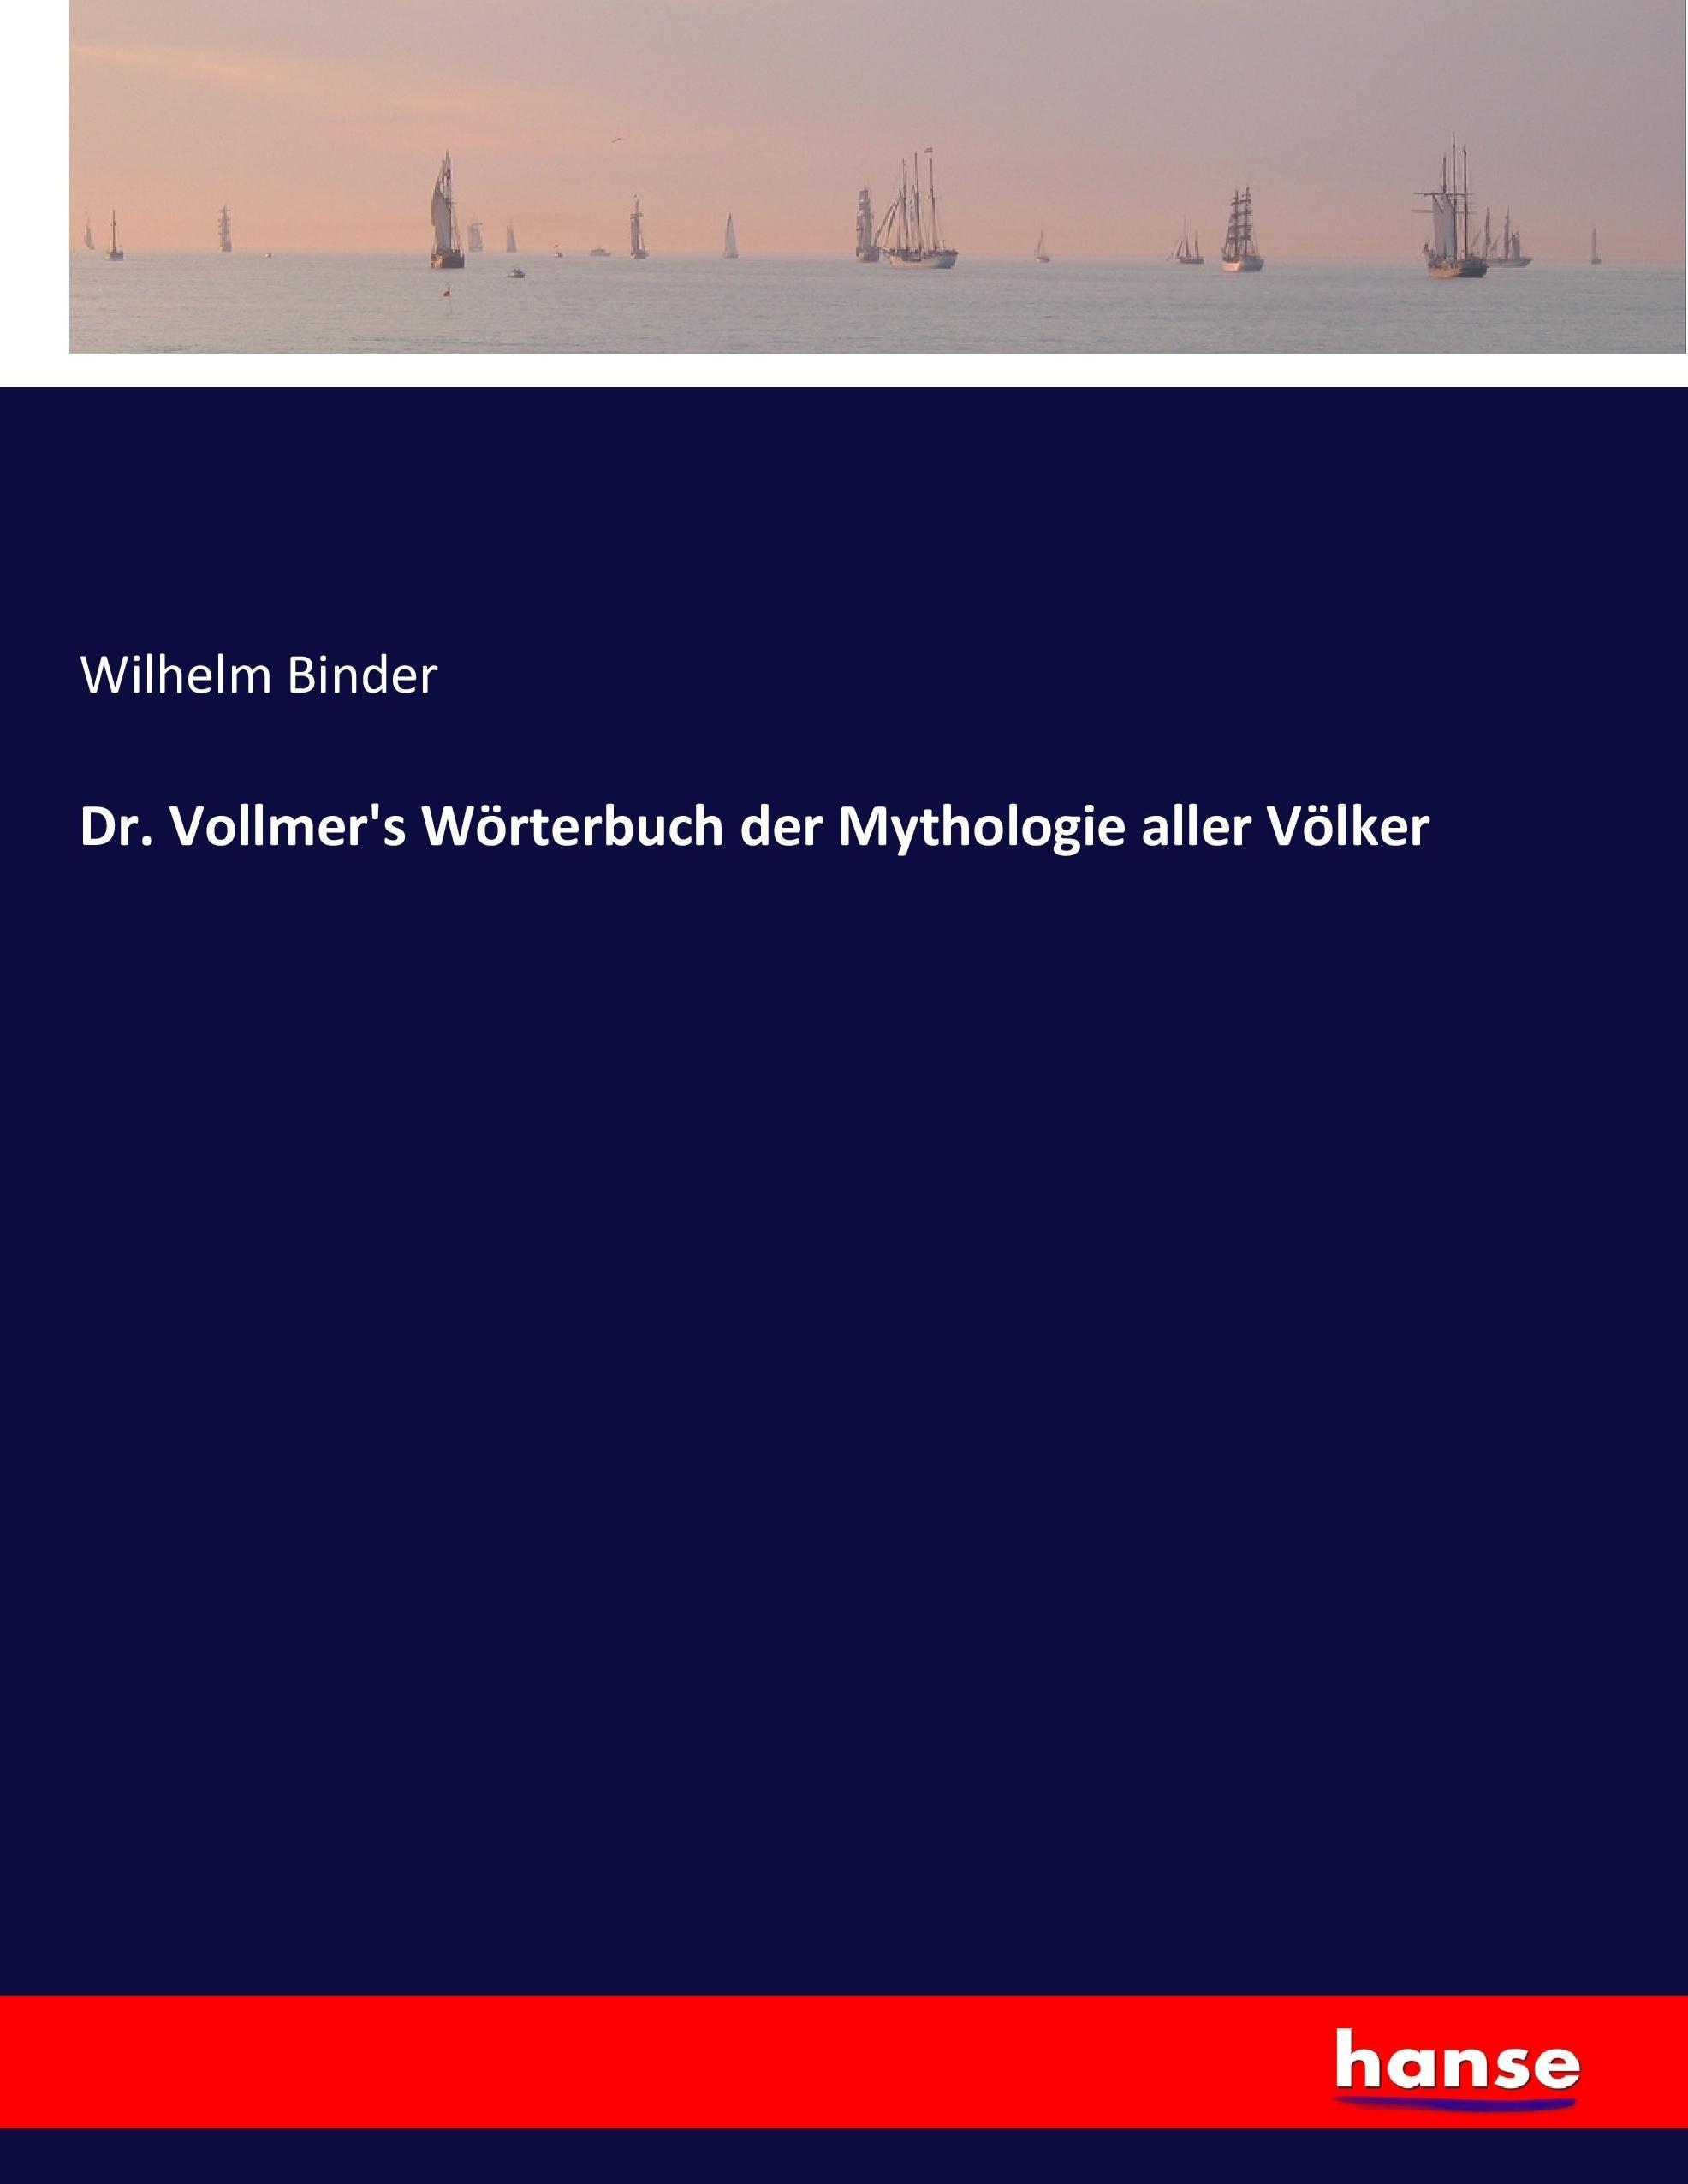 Dr. Vollmer's Wörterbuch der Mythologie aller Völker / Wilhelm Binder / Taschenbuch / Paperback / 532 S. / Deutsch / 2017 / hansebooks / EAN 9783744624732 - Binder, Wilhelm